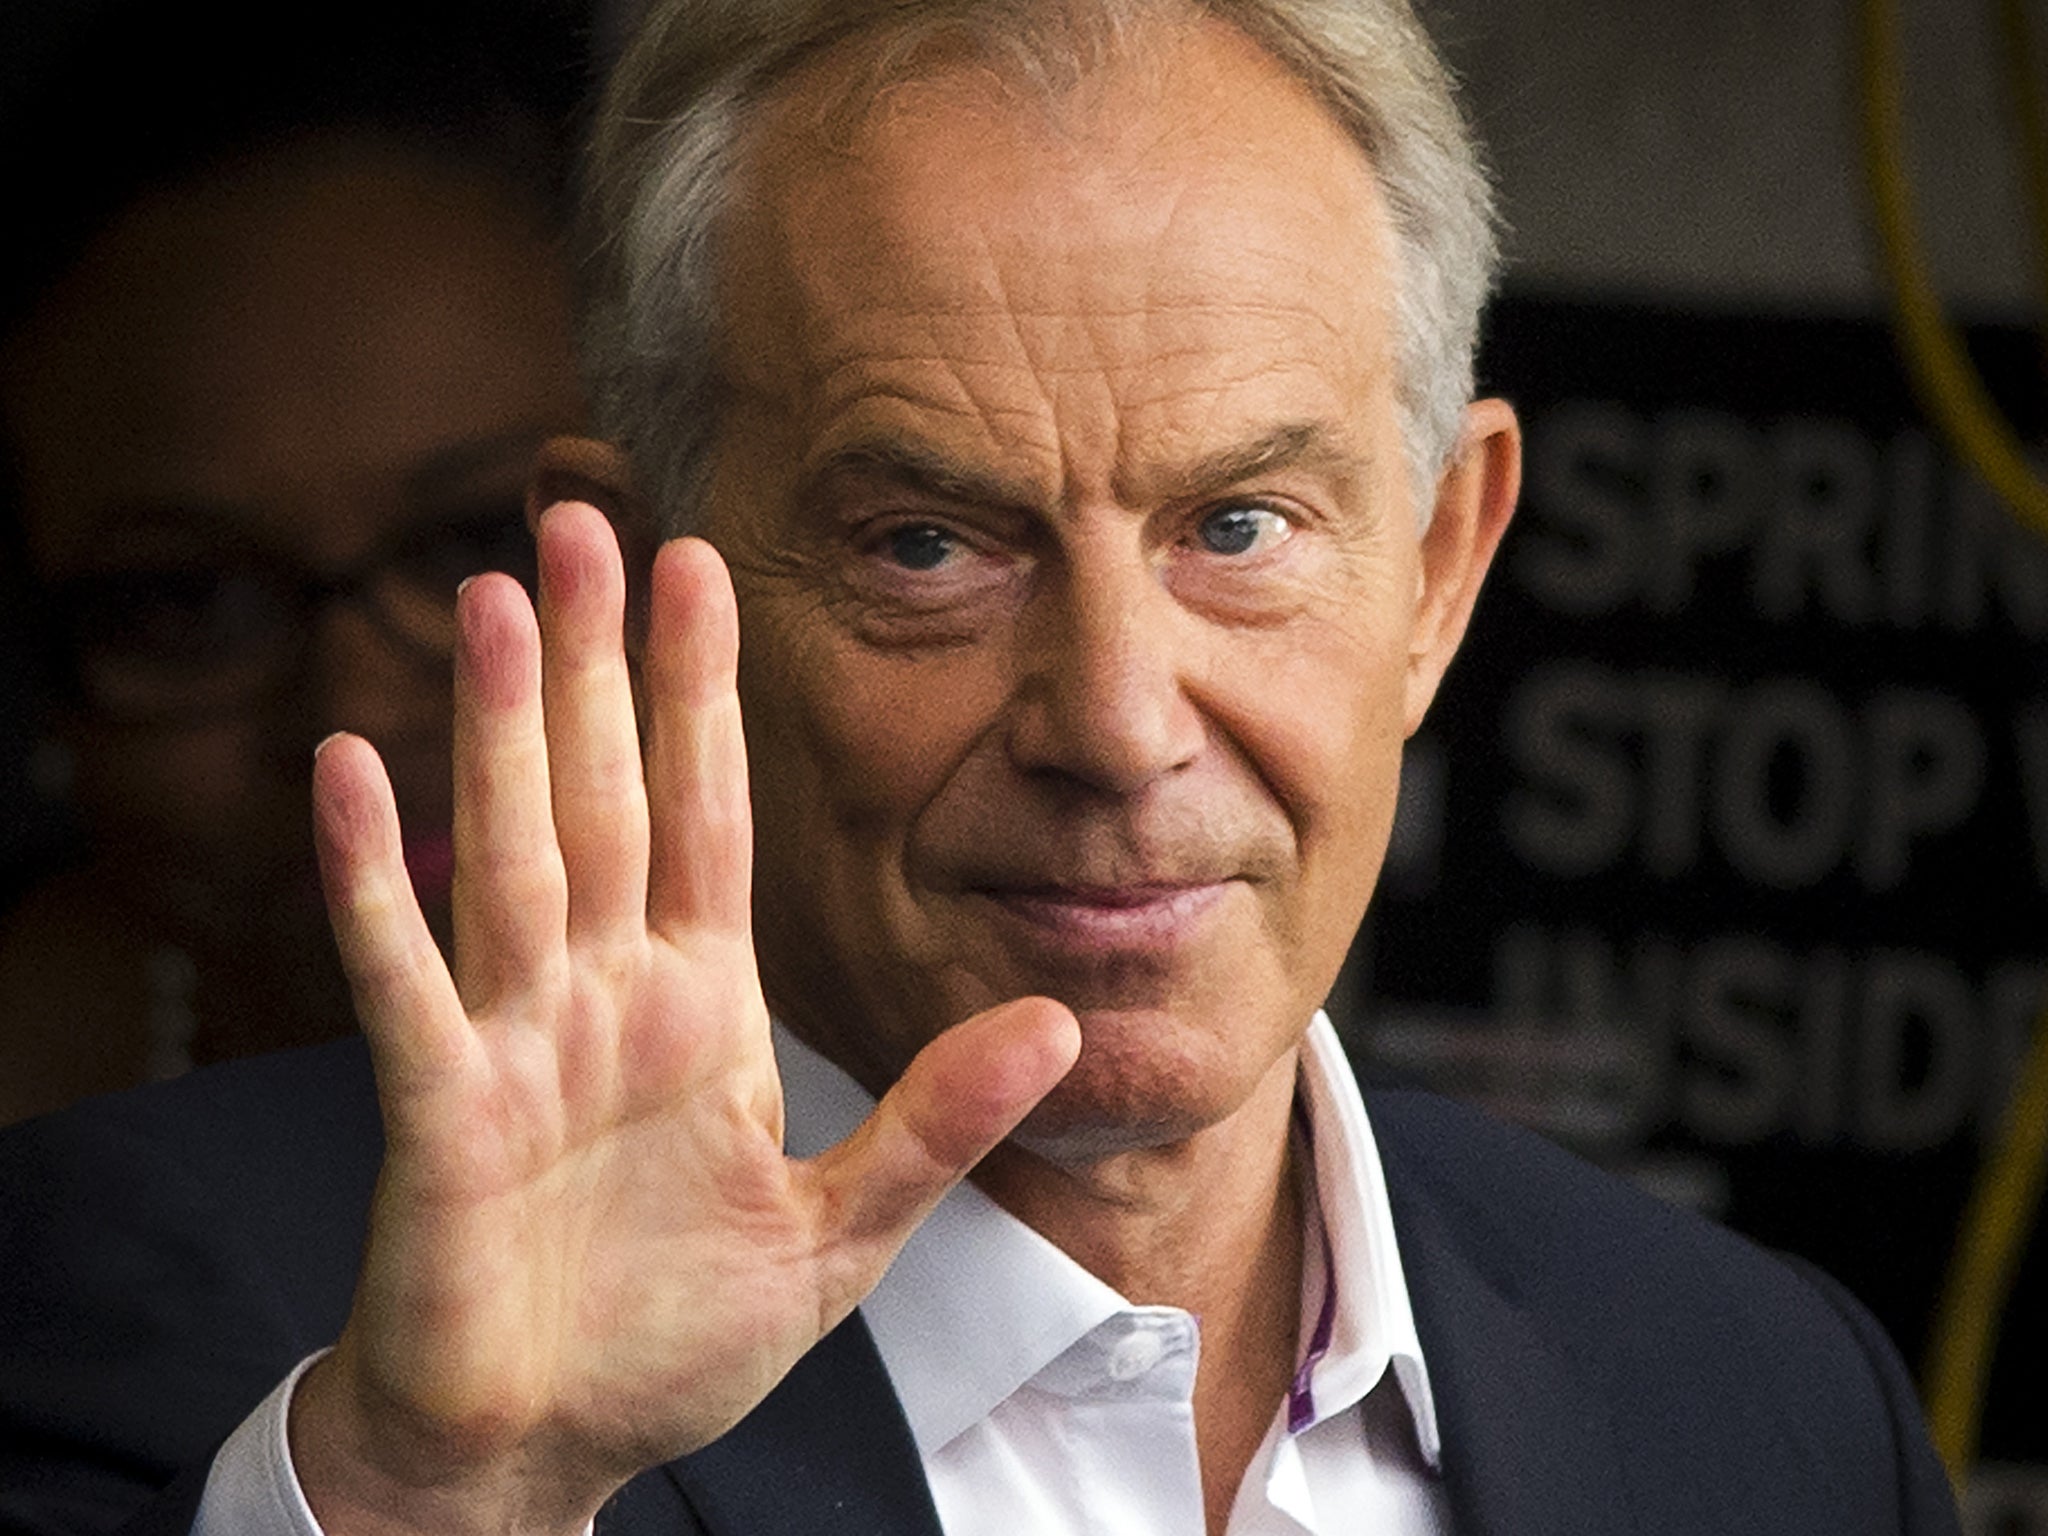 Tony Blair, former prime minister